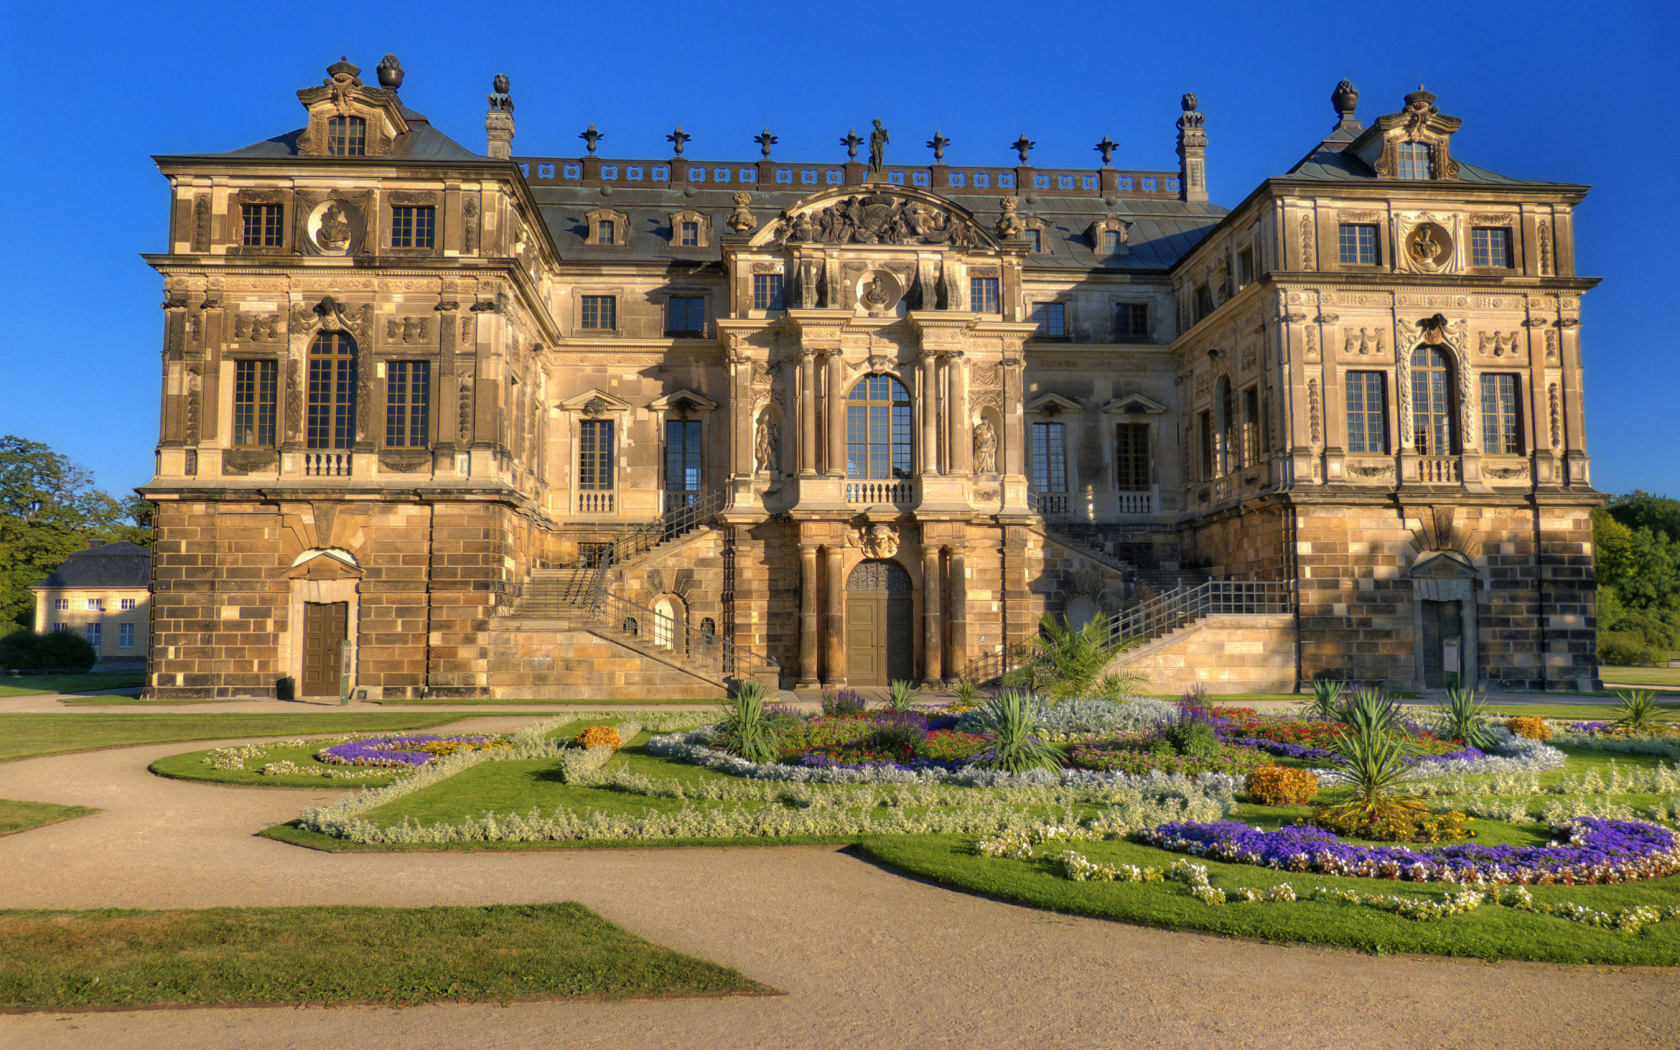 Дворец в Большом саду, Дрезден. Германия 